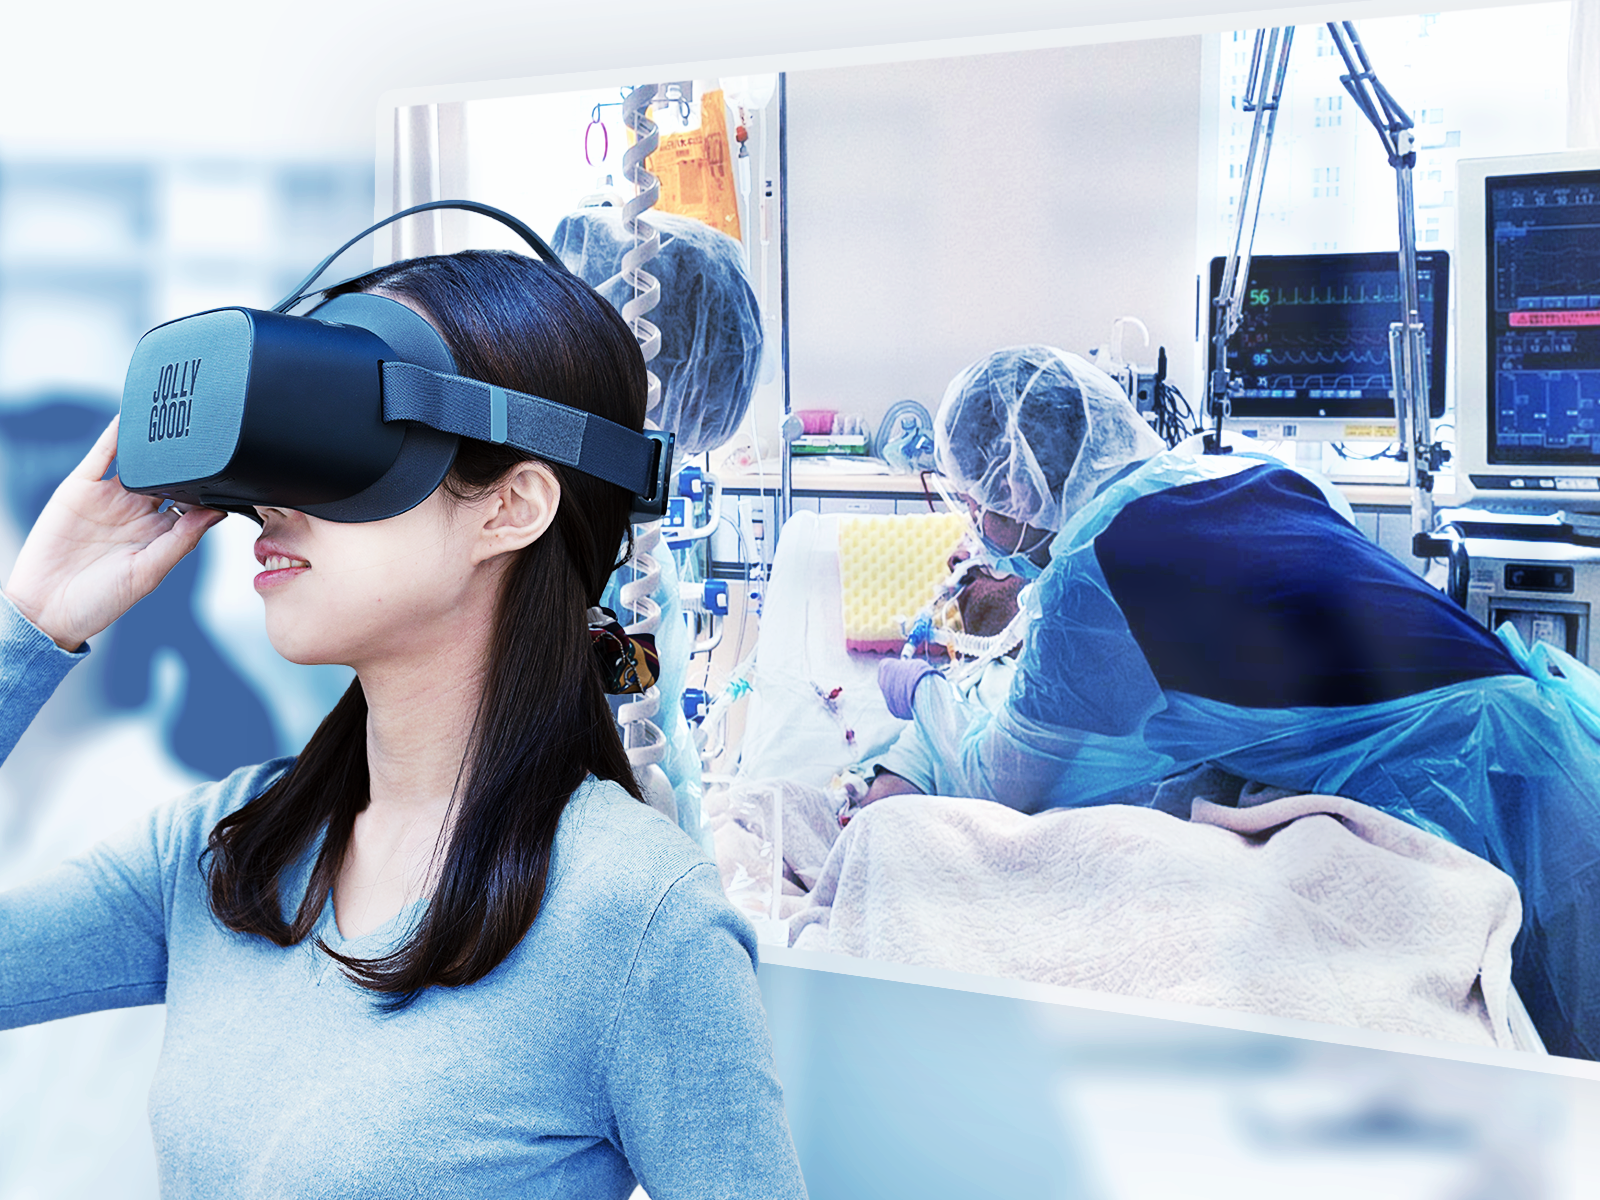 日本経済新聞にて、ジョリーグッドと順天堂大学が共同開発する感染症診療VRが紹介されました。